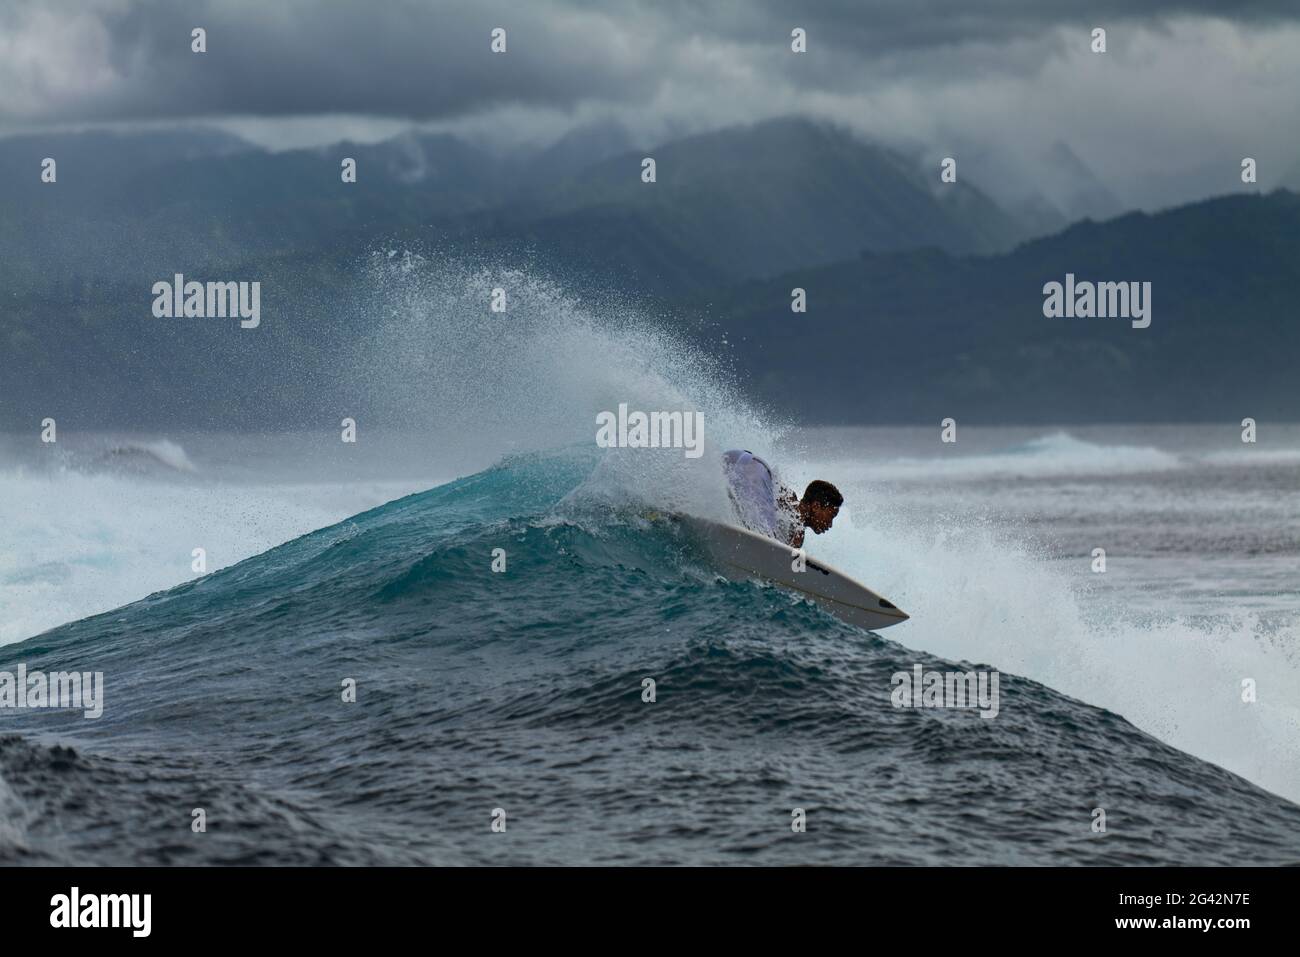 Surfez sur la vague de rupture dans la zone de surf Teahupoo, Tahiti Iti, Tahiti, les îles du vent, Polynésie française, Pacifique Sud Banque D'Images